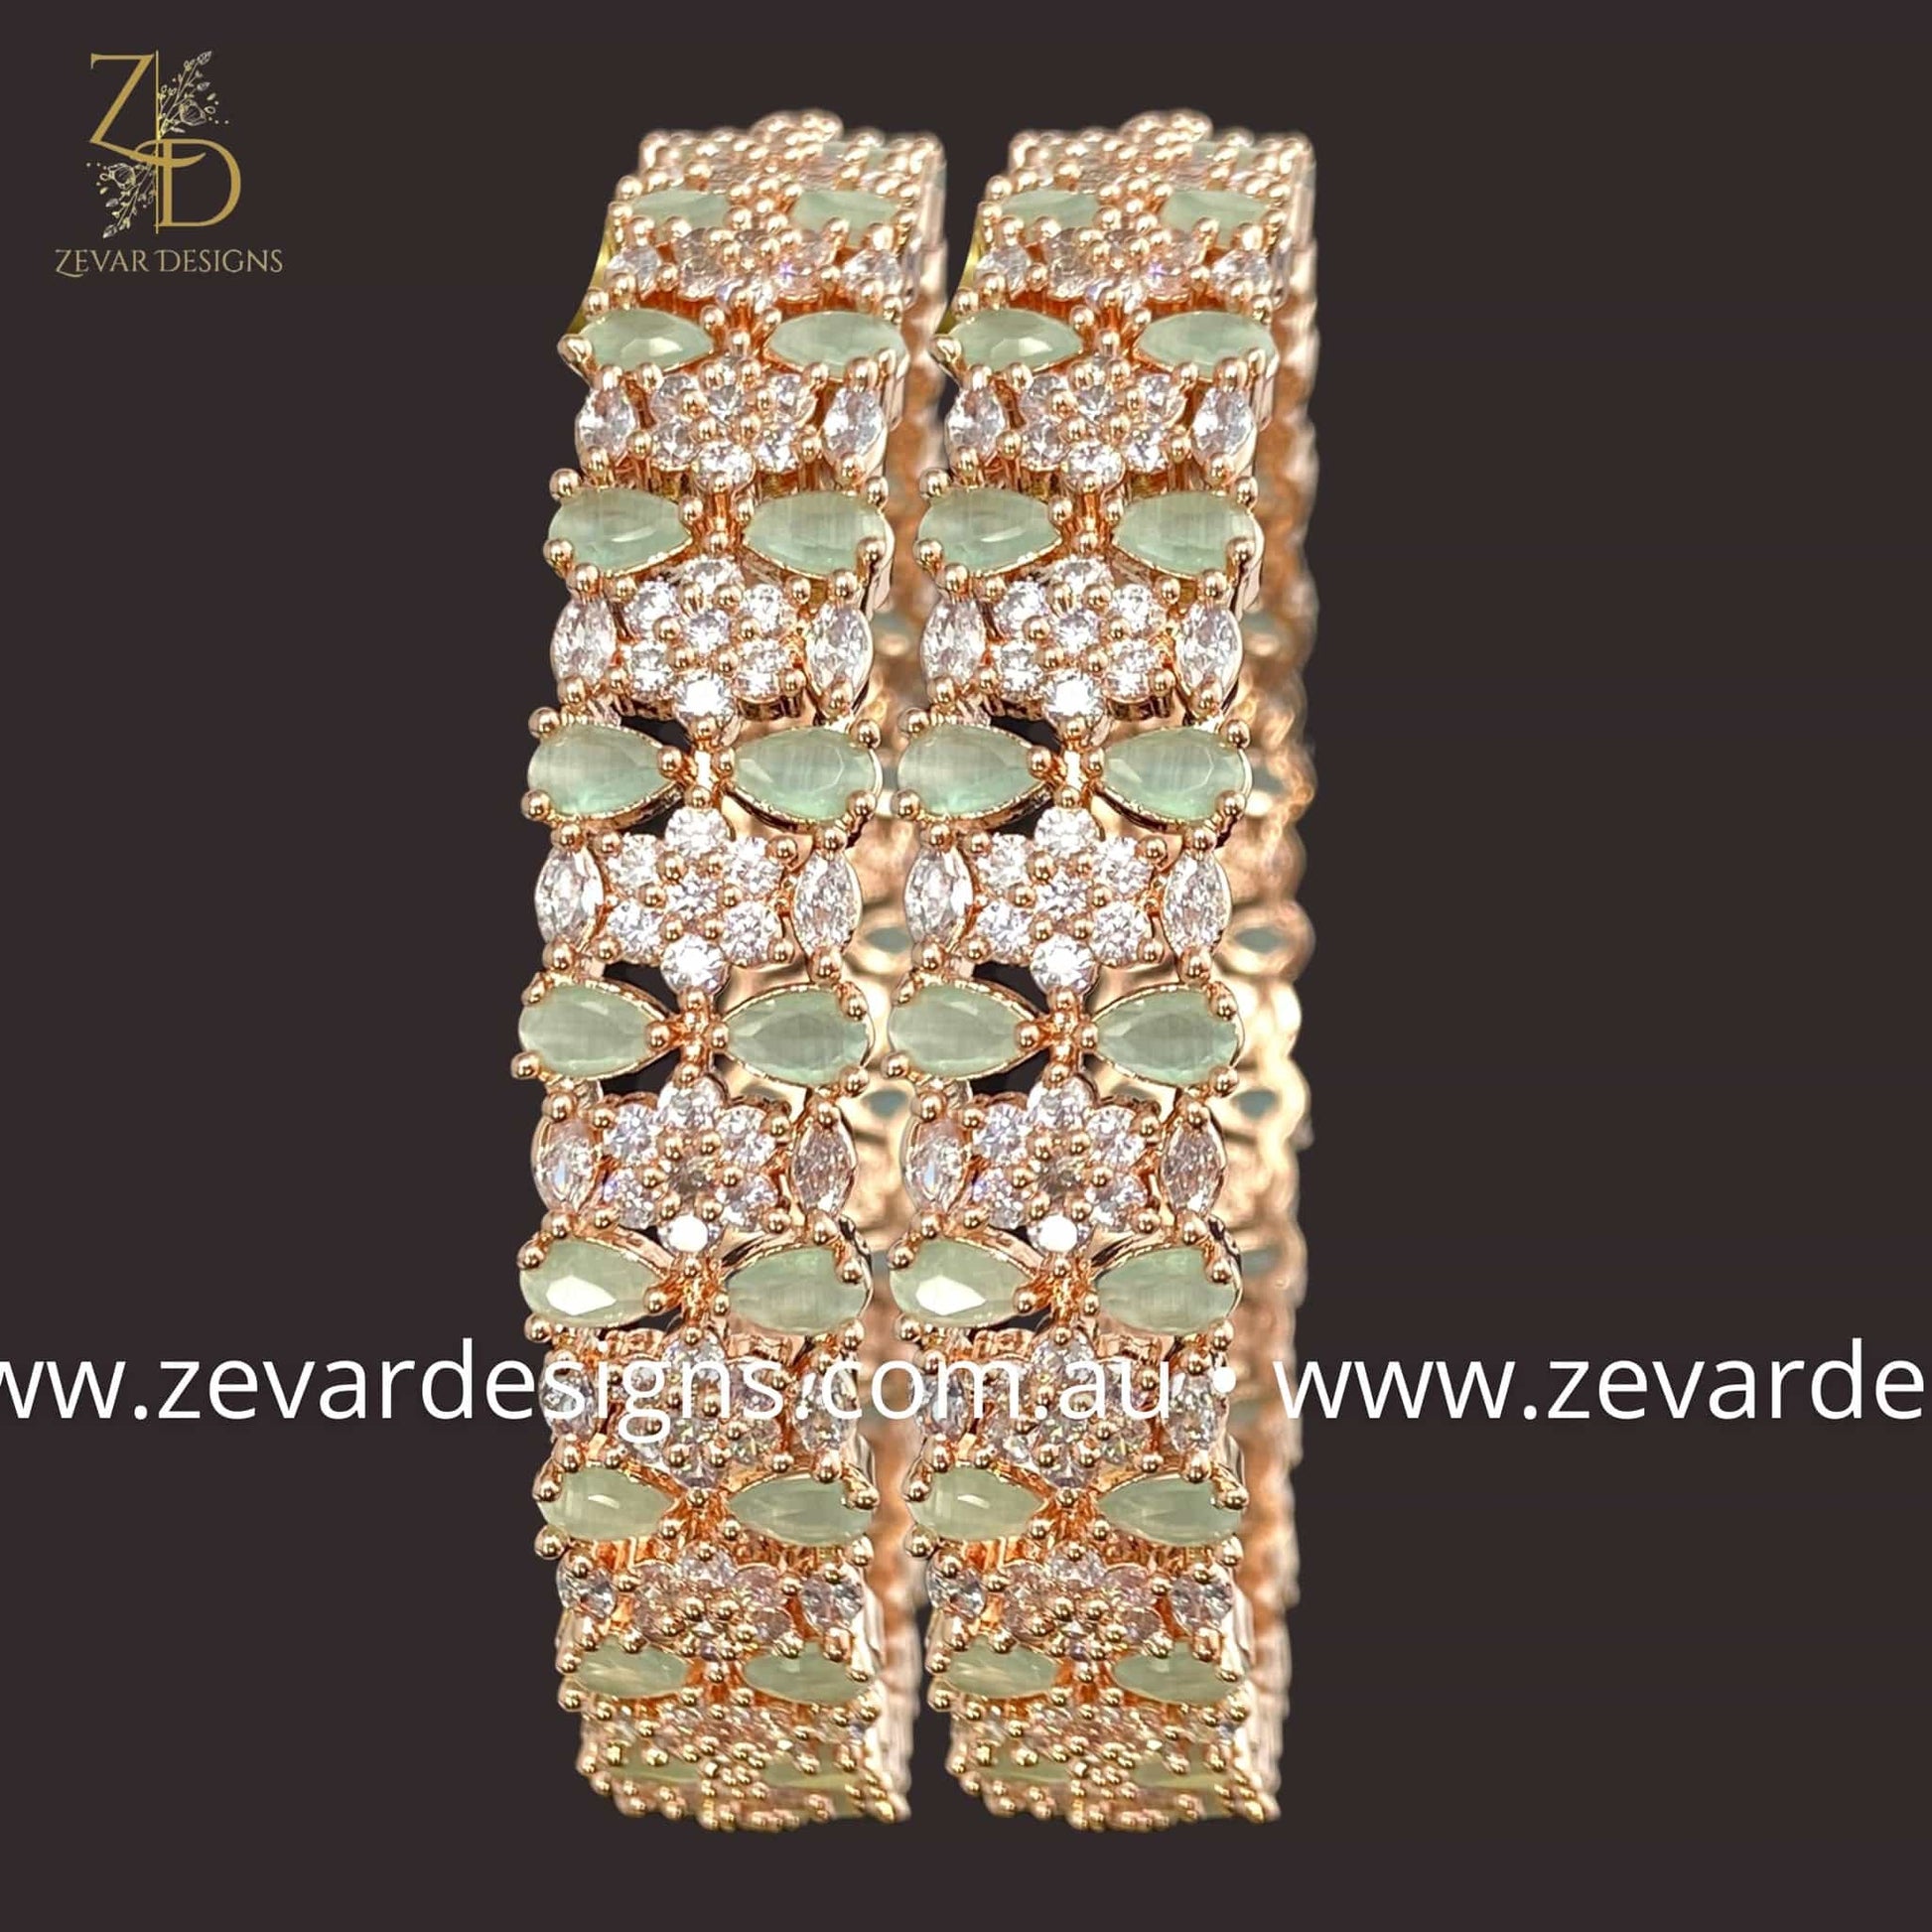 Zevar Designs Bangles & Bracelets - AD AD Bangles - Mint and Rose Gold